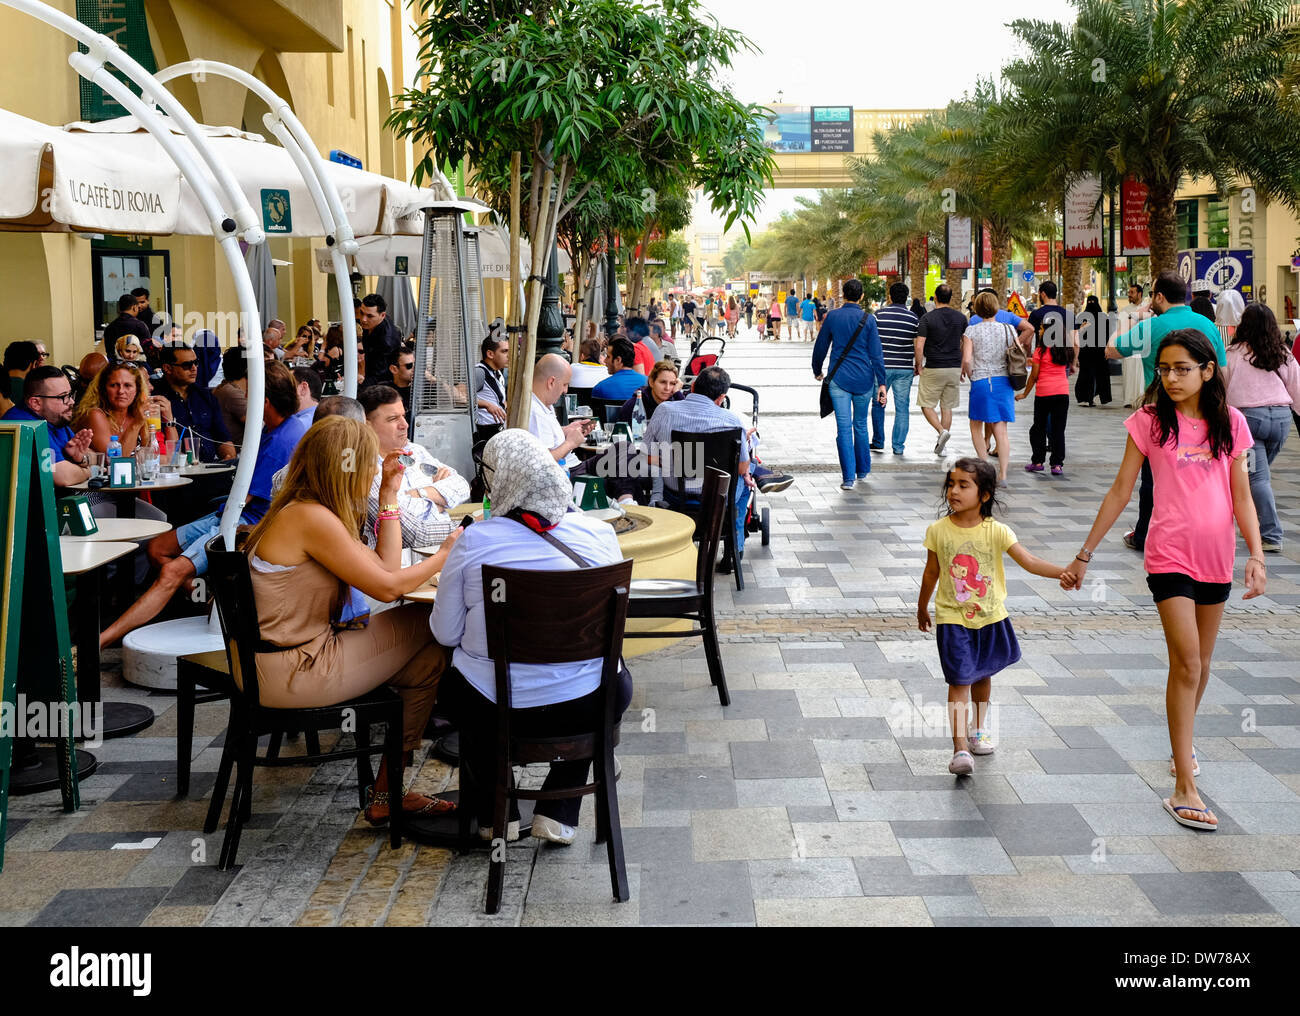 Concurridos cafés en el paseo de tiendas y restaurantes en la calle de la playa de Jumeirah Residences (JBR) en Dubai, Emiratos Árabes Unidos Foto de stock